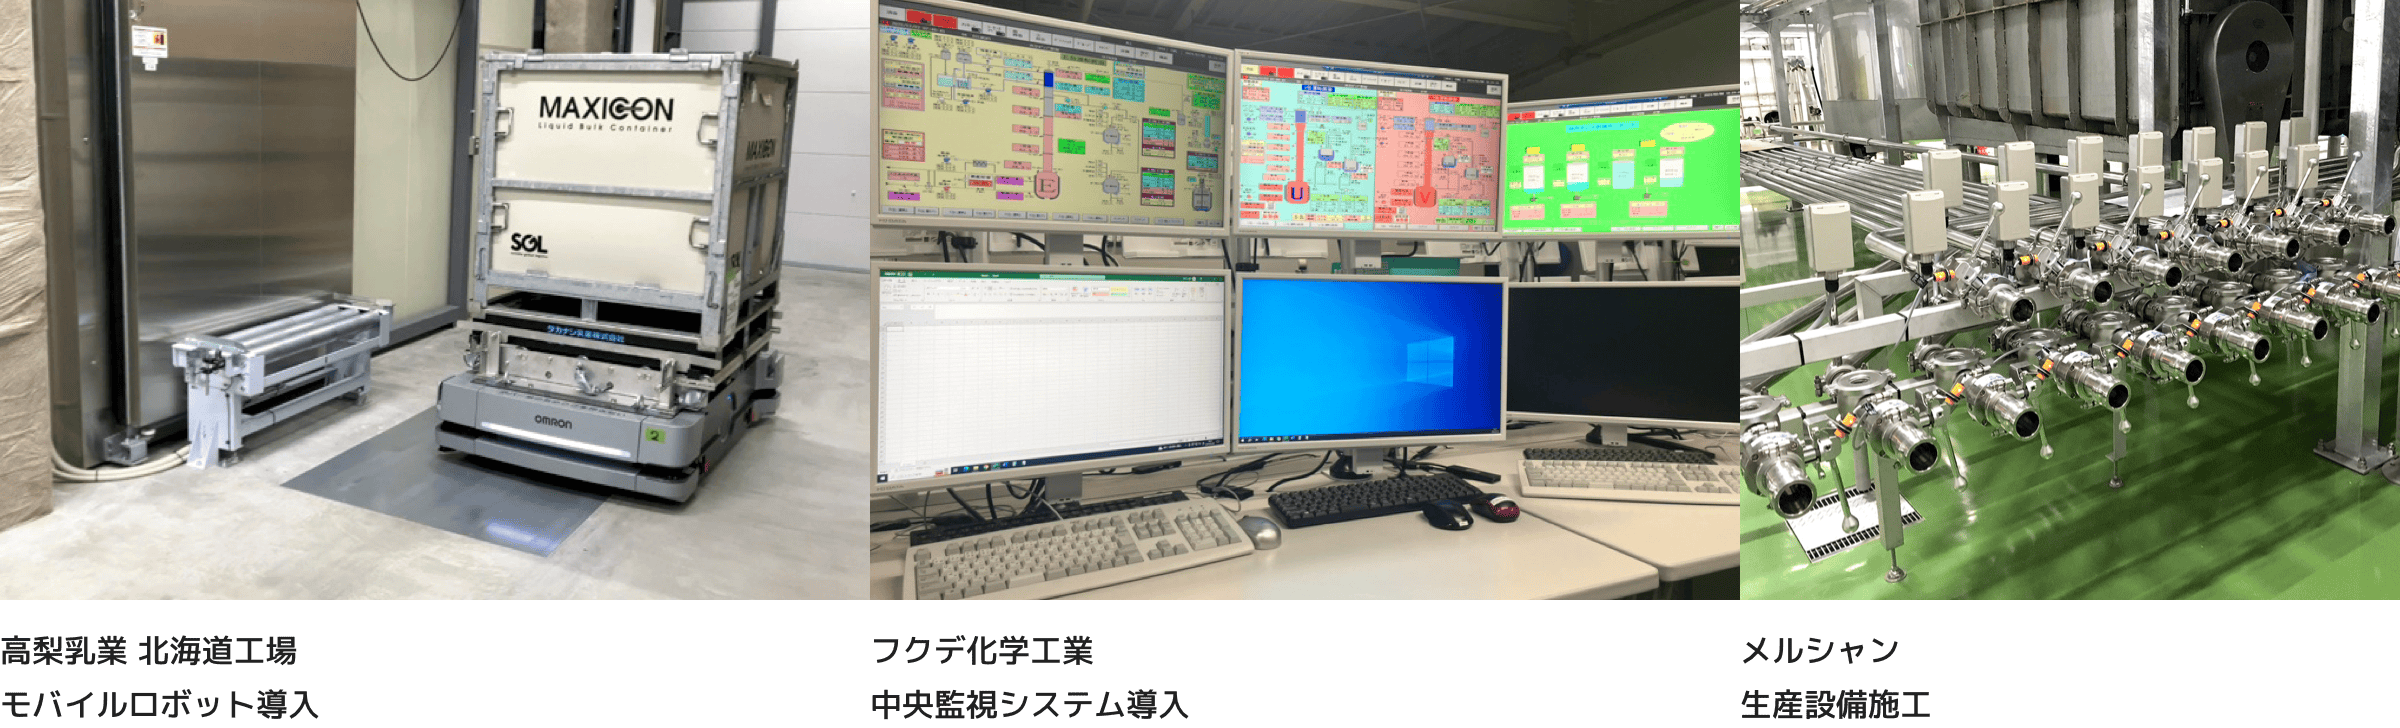 高梨乳業 北海道工場モバイルロボット導入 フクデ化学工業中央監視システム導入 メルシャン生産設備施工